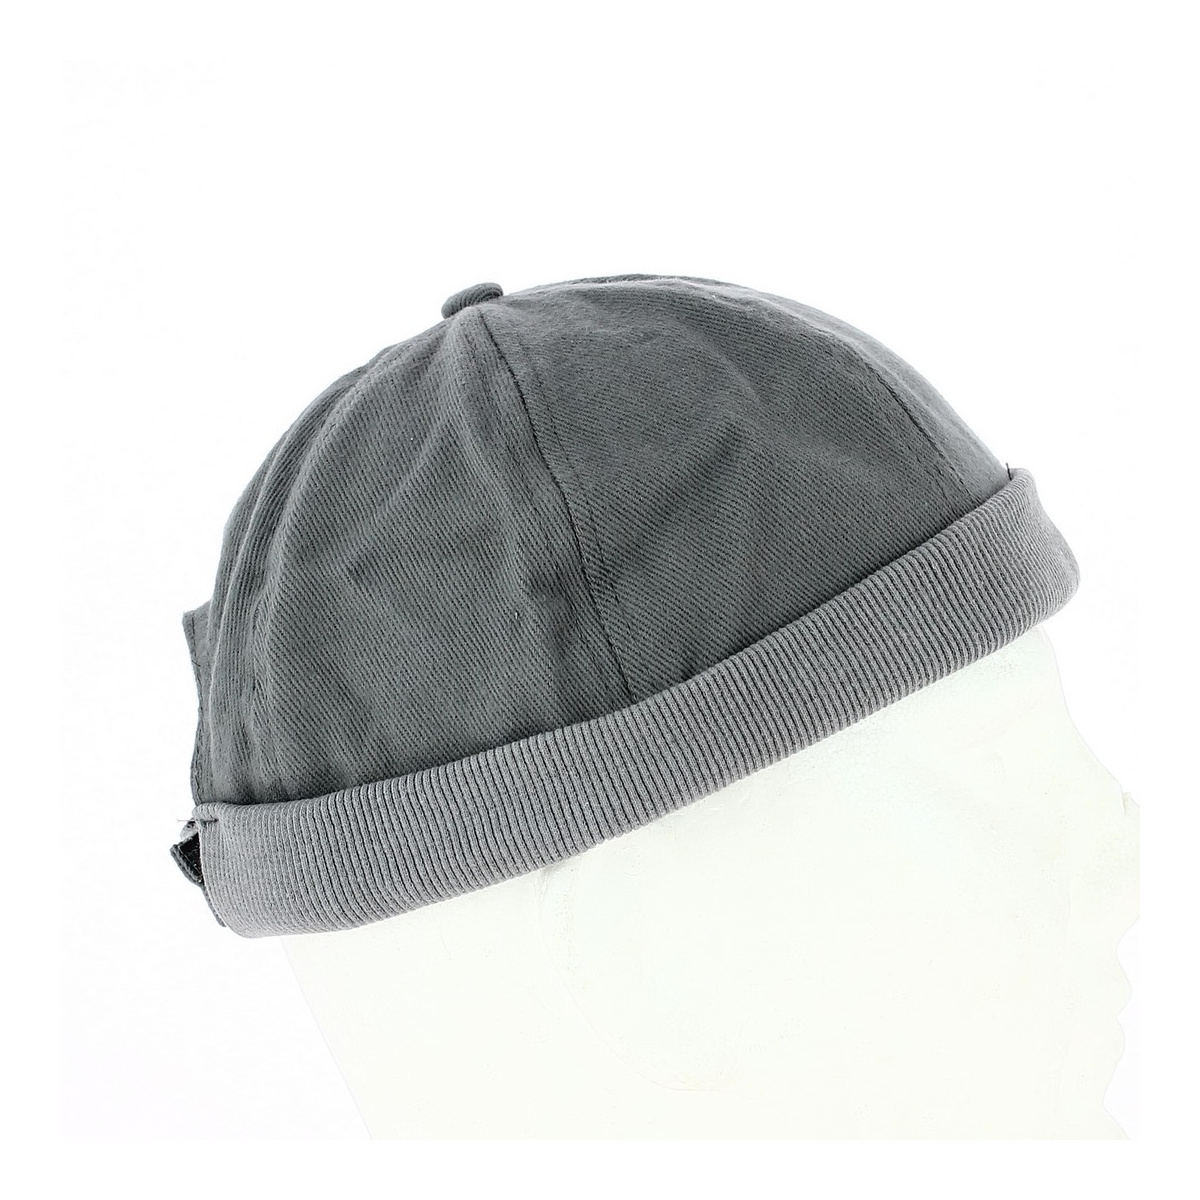 Bonnet marin breton ⇒ Achat bonnet miki pour homme en coton